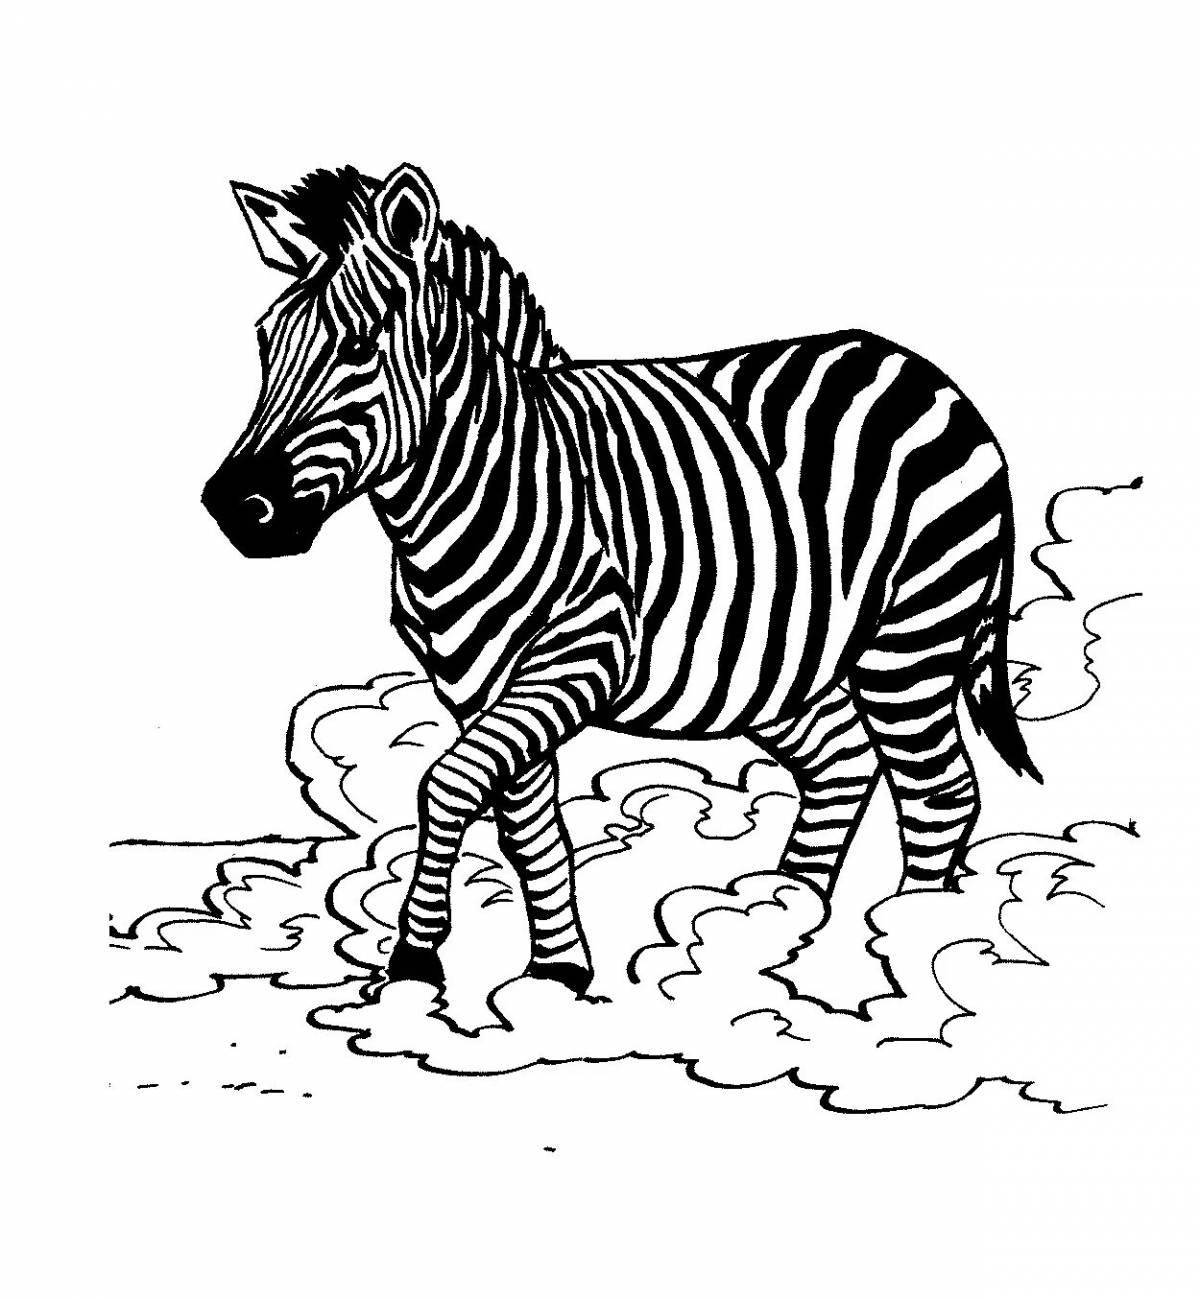 Величественная клетчатая зебра